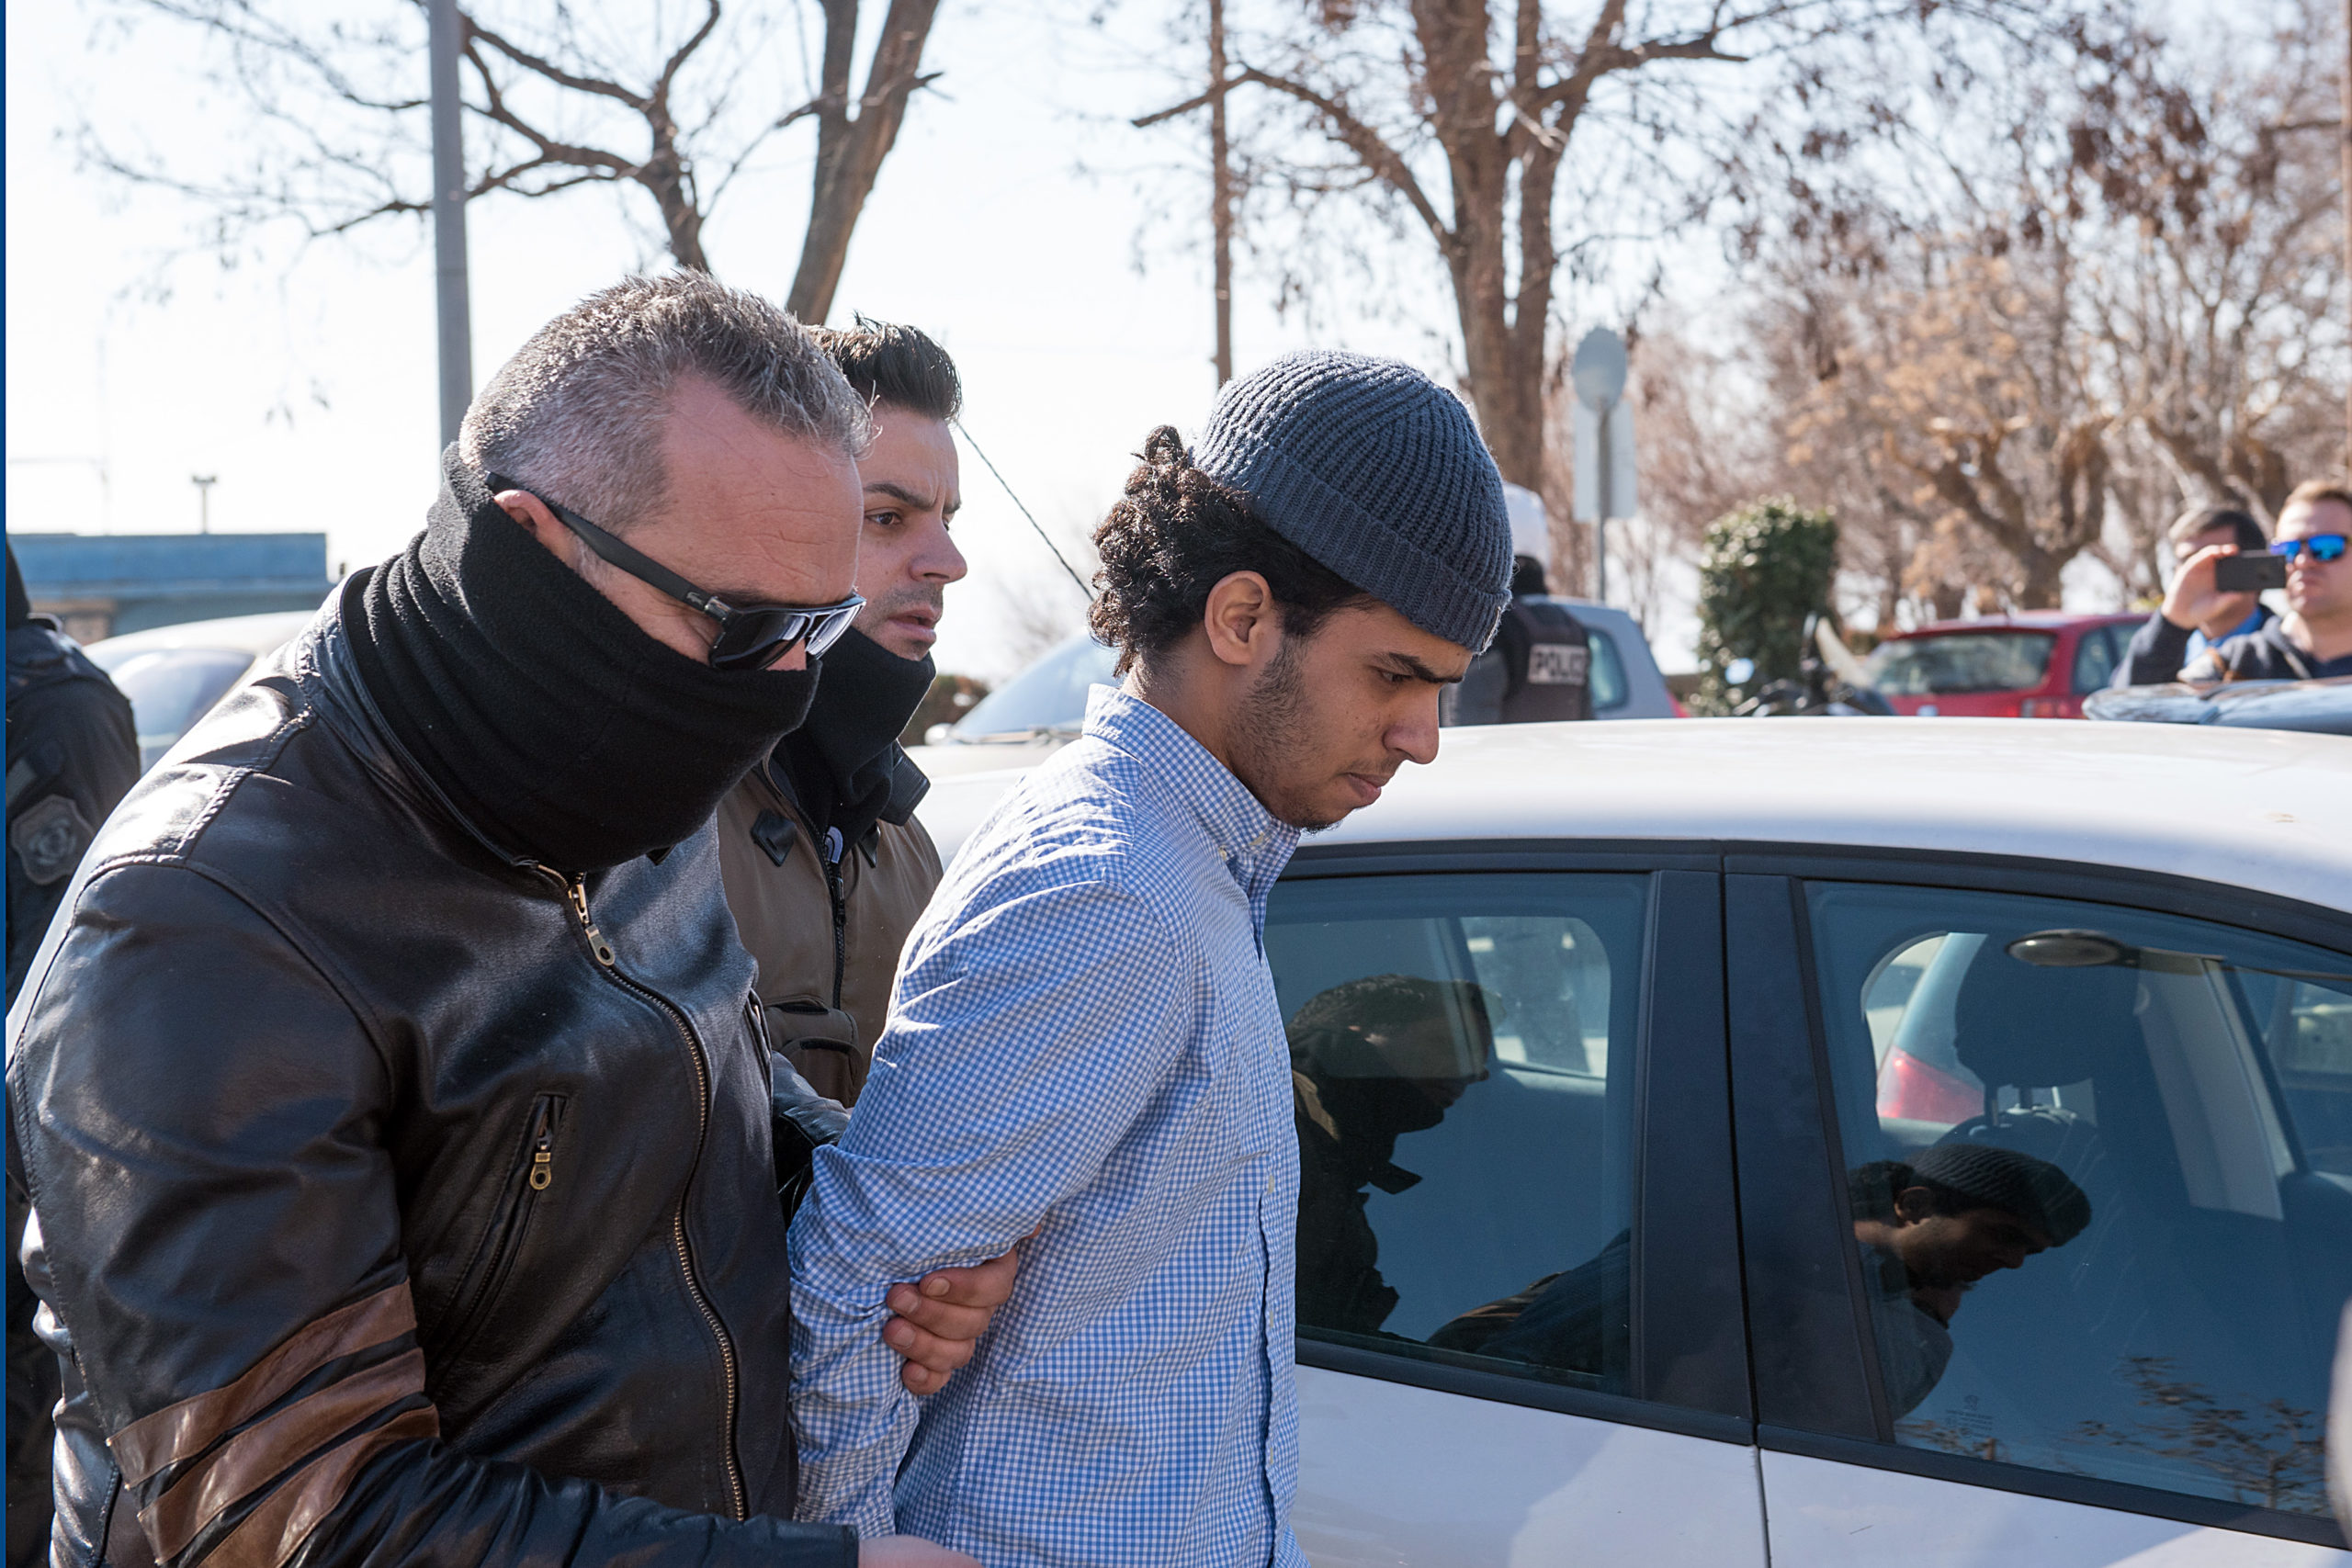 Οι τζιχαντιστές που συνελήφθησαν στην Αλεξανδρούπολη υποστήριξαν πως τα μαχαίρια ήταν… σουβενίρ